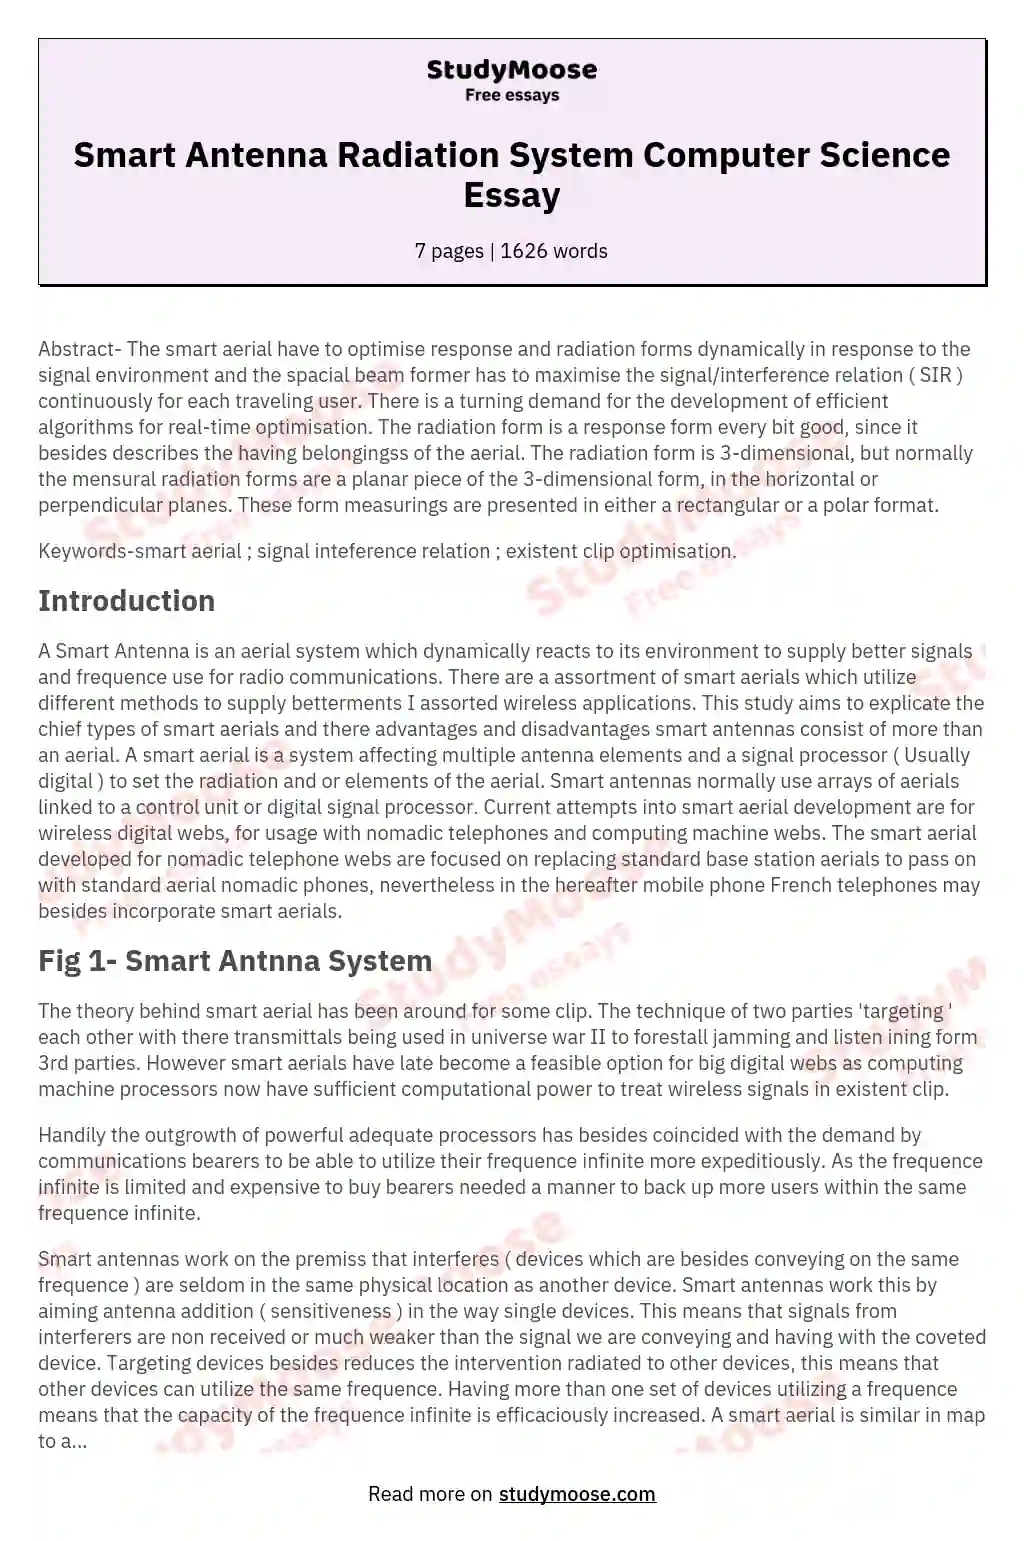 Smart Antenna Radiation System Computer Science Essay essay